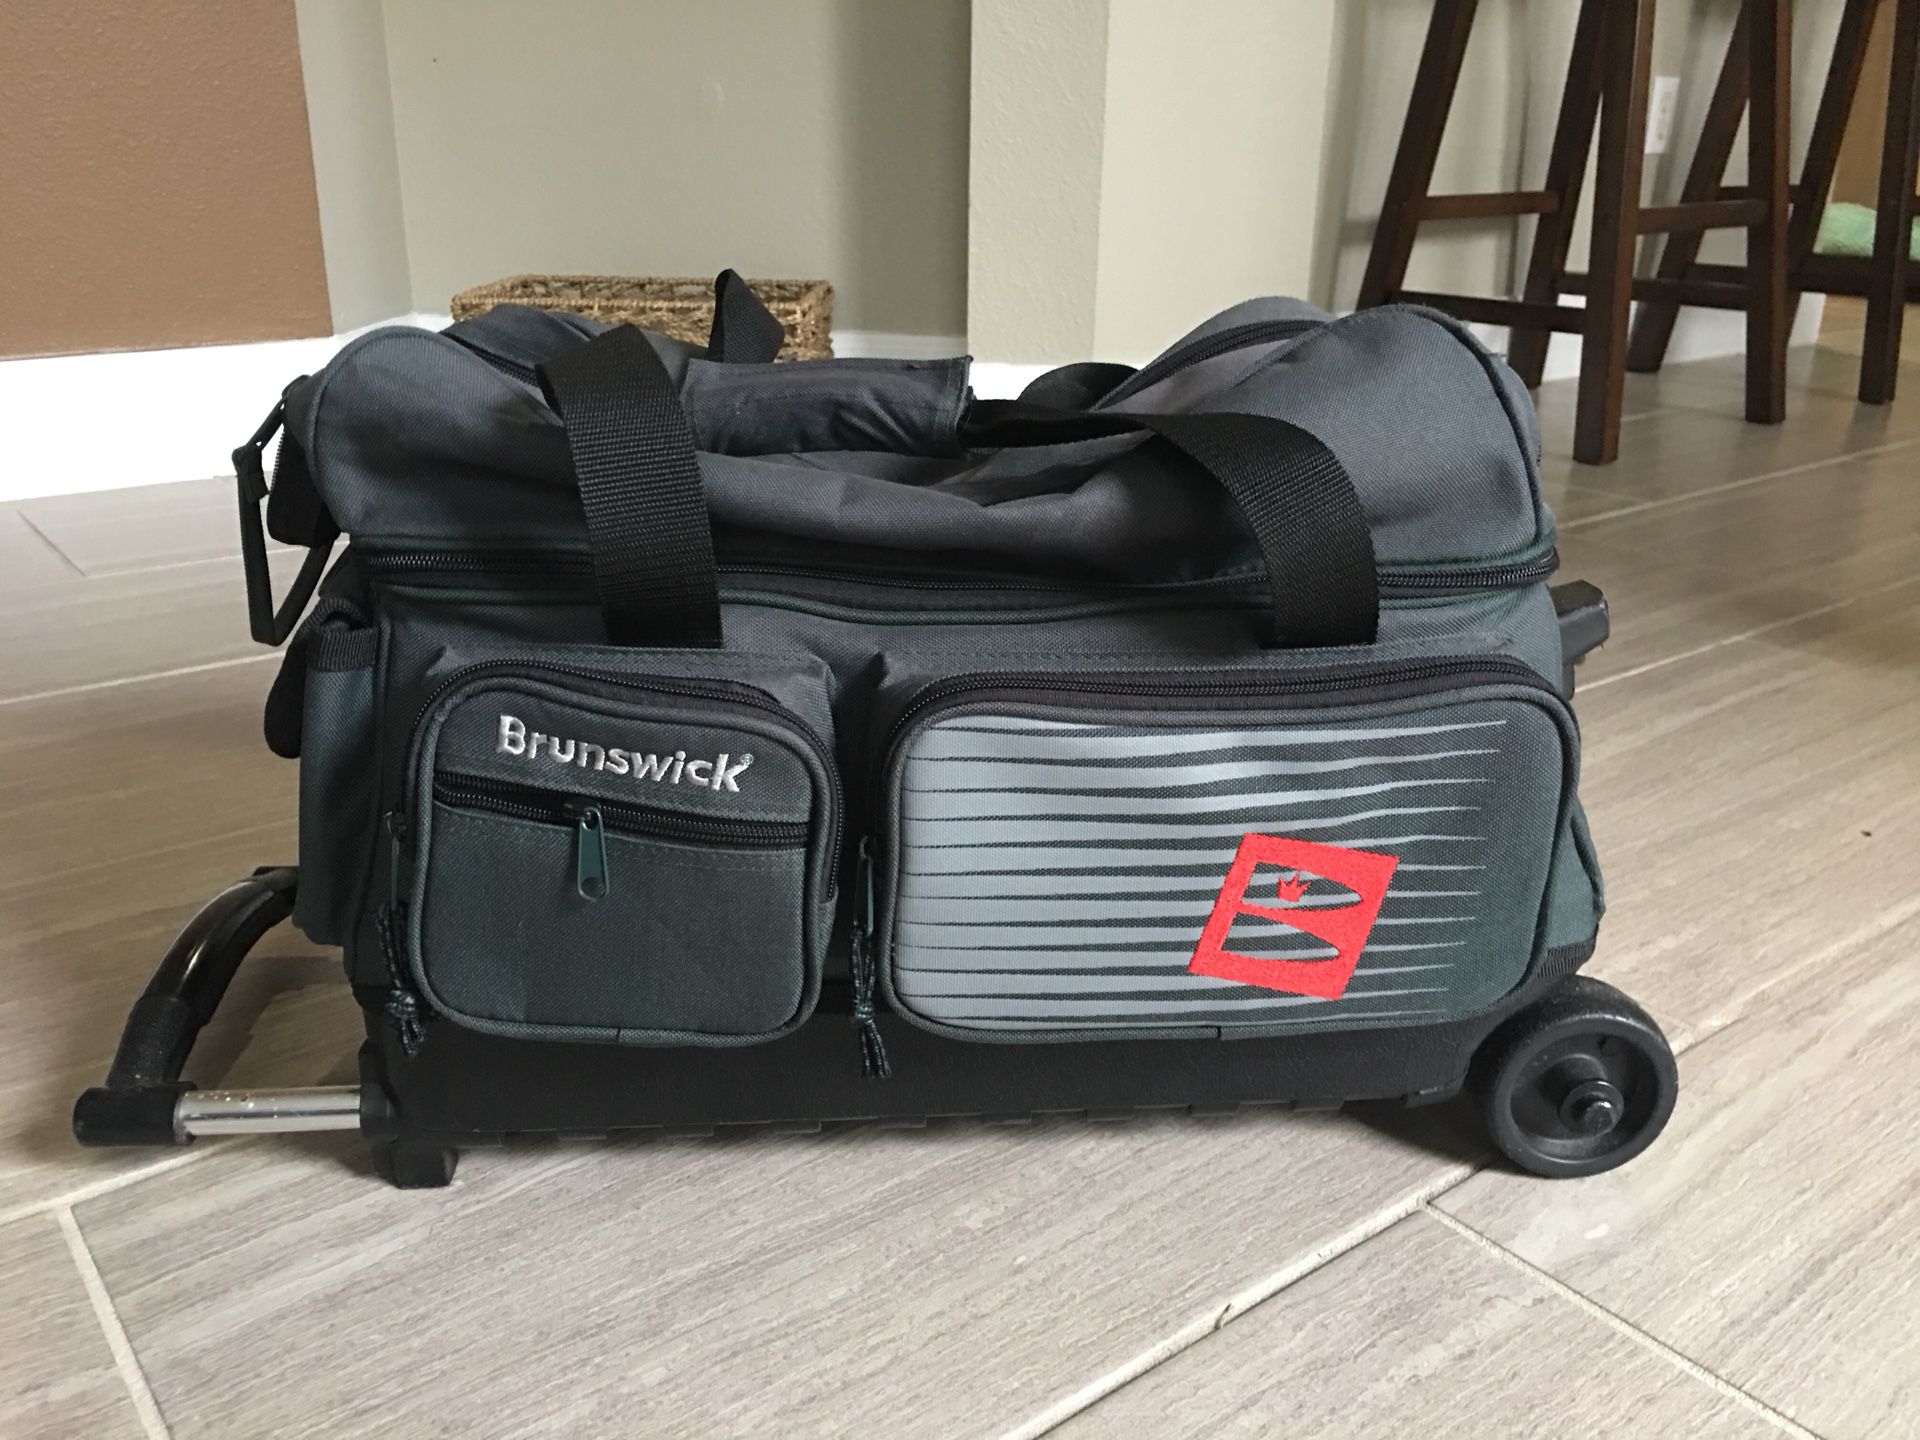 Brunswick rolling two bowling ball bag